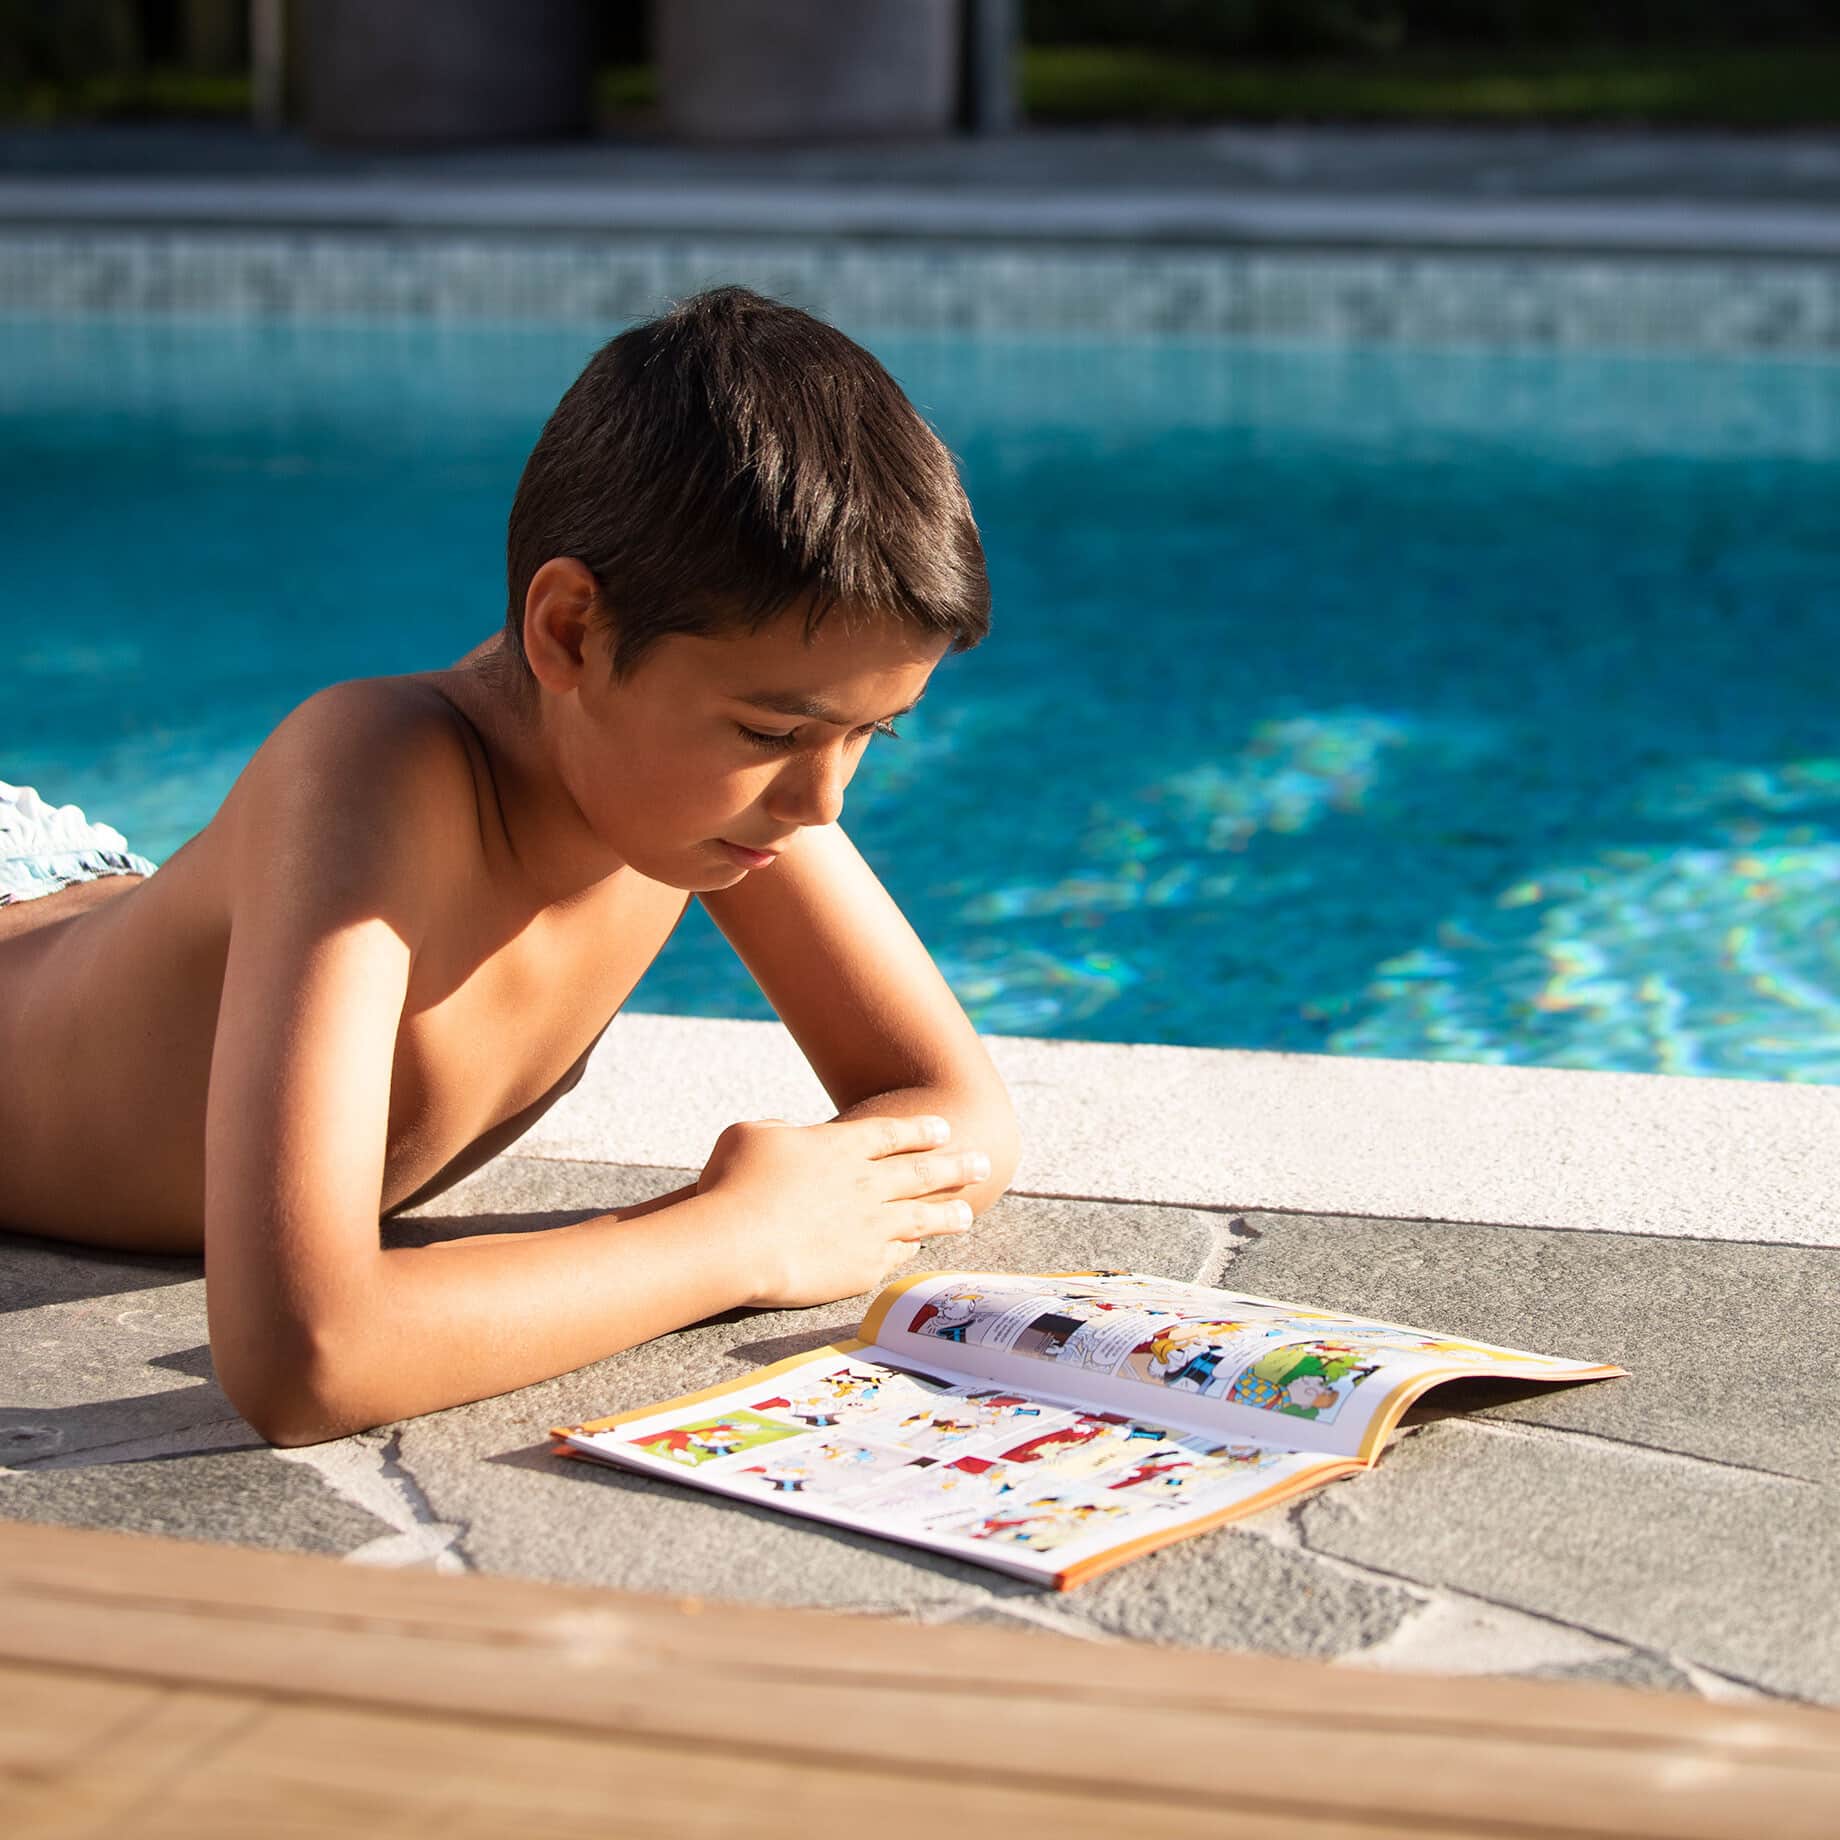 Pool Store - Pojke läser tidning på poolkanten